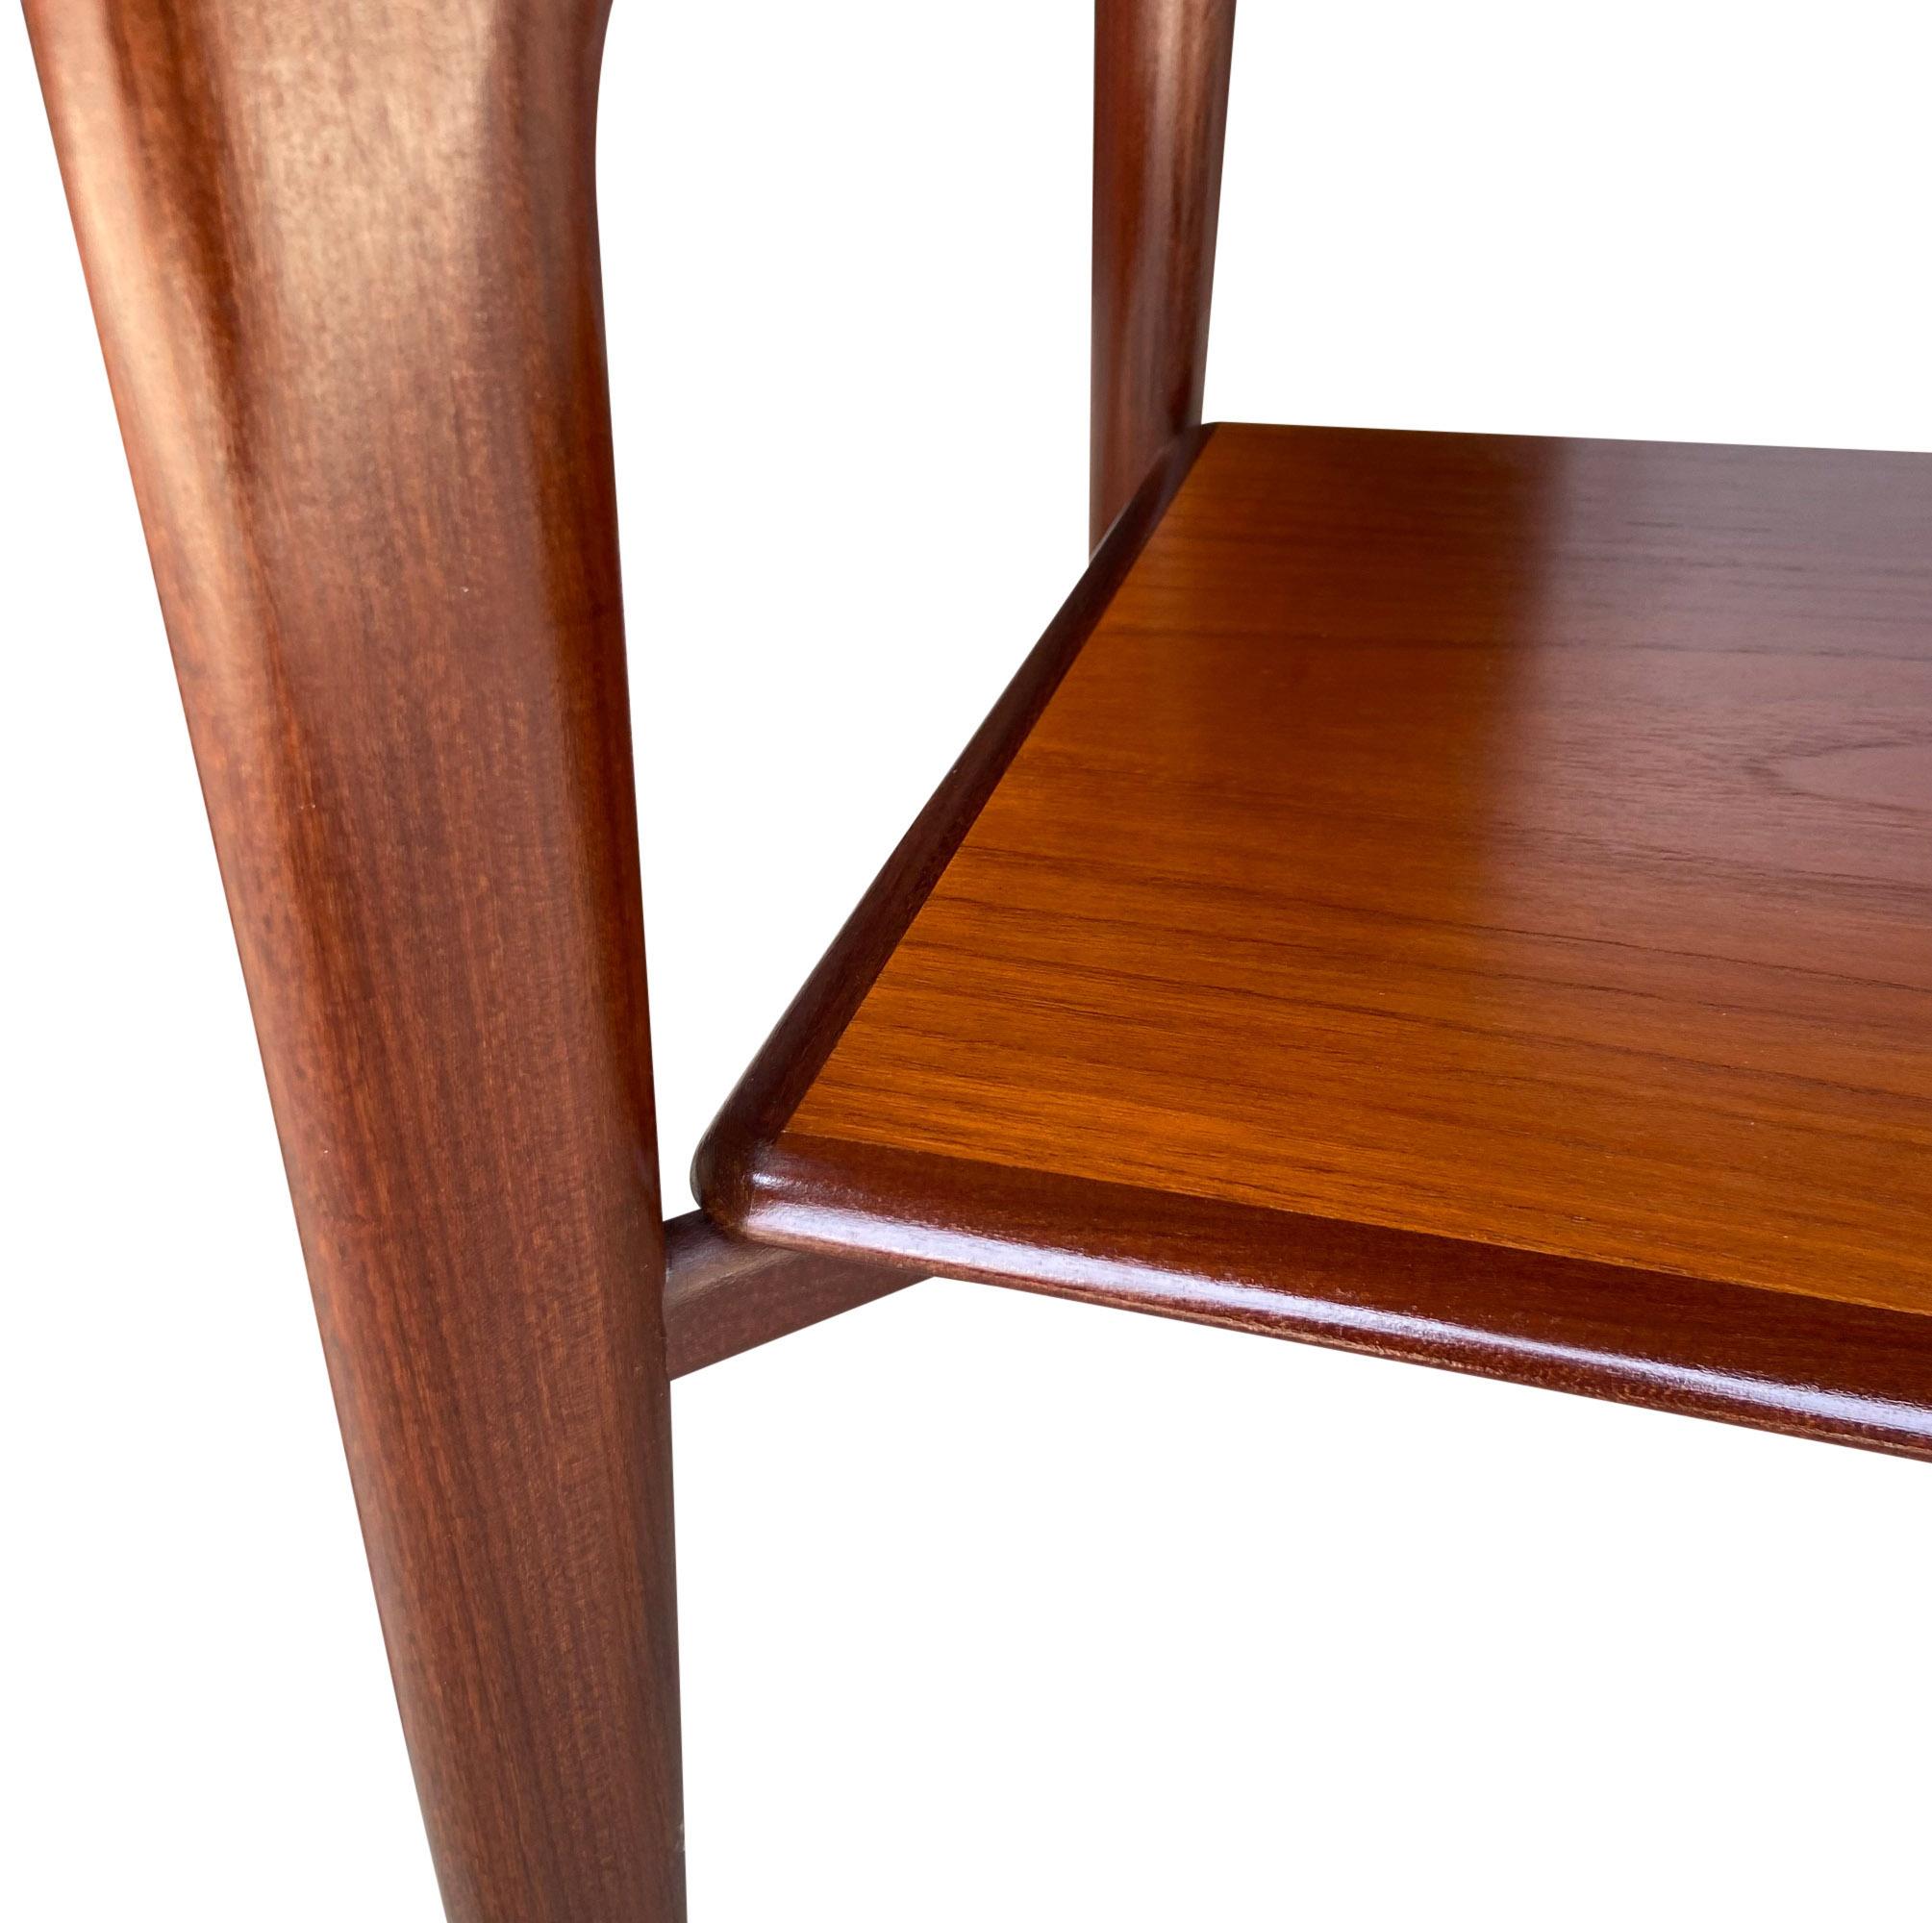 Nous vous présentons ces magnifiques tables danoises en bois de teck de haute qualité. Dans un état original étonnant montrant une patine chaude et brillante. Conçu par Svend Aage Madsen.

L'étagère a une hauteur de 9'' à partir du sol.